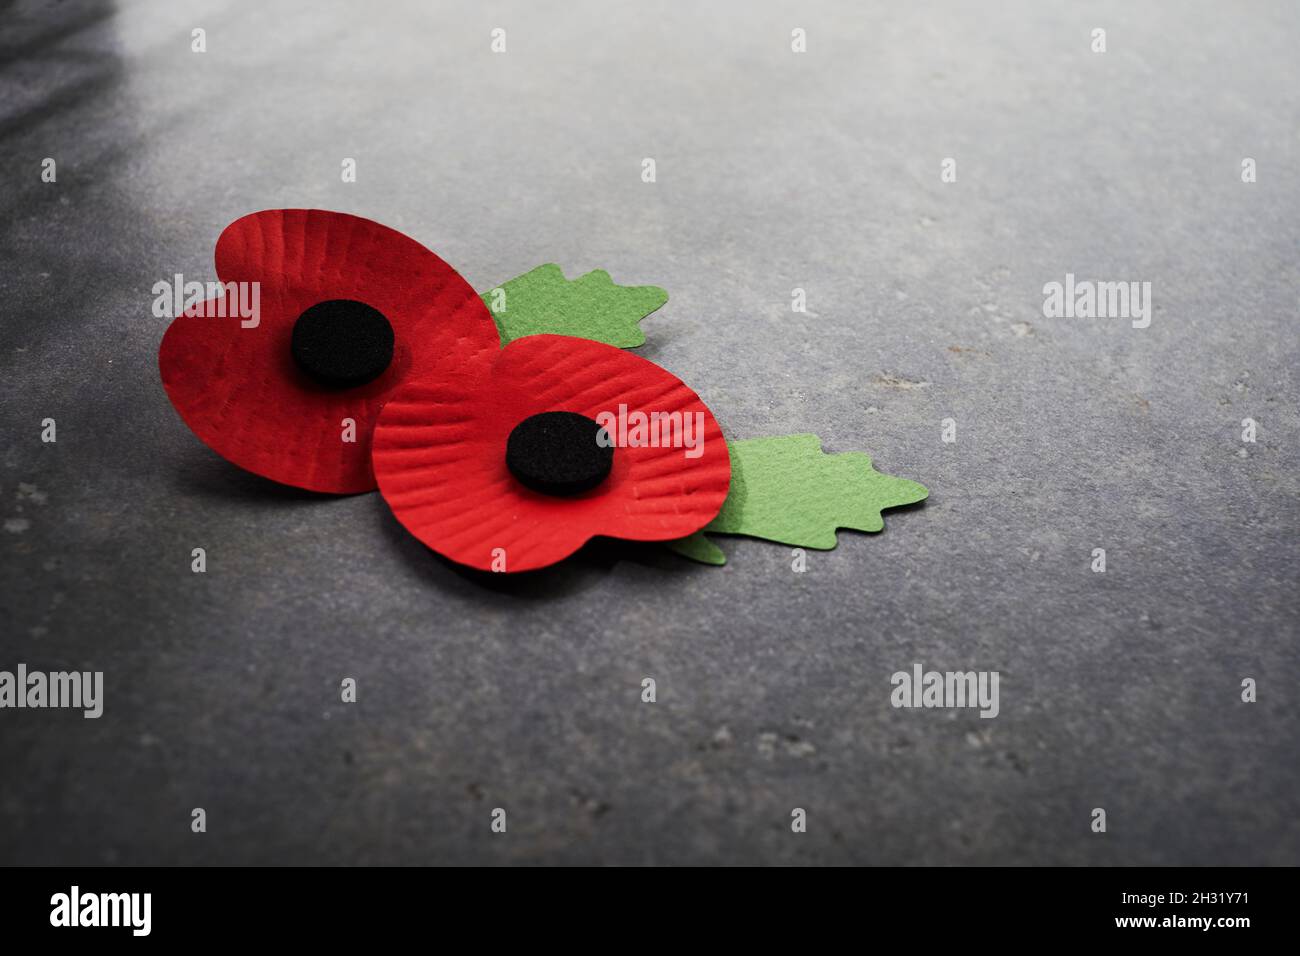 Día del recuerdo de la Guerra Mundial. La amapola roja es un símbolo de  recuerdo para los caídos en la guerra. Amapolas rojas sobre fondo de piedra  oscura Fotografía de stock 